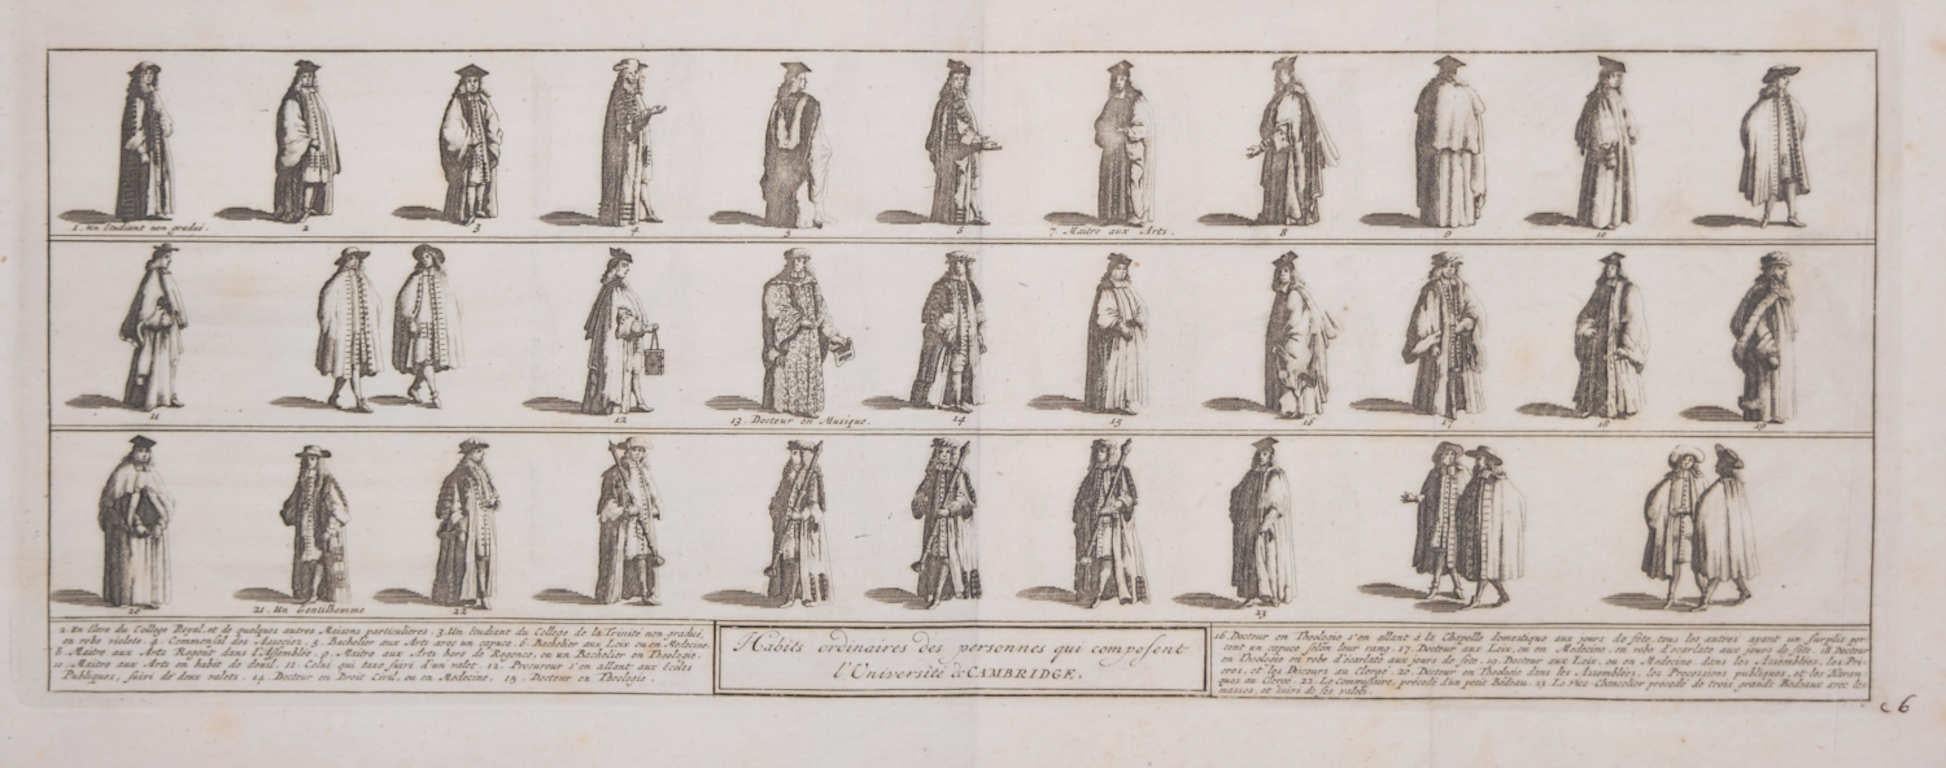 Pieter van der Aa: 'Costumes of the University of Cambridge' after Loggan